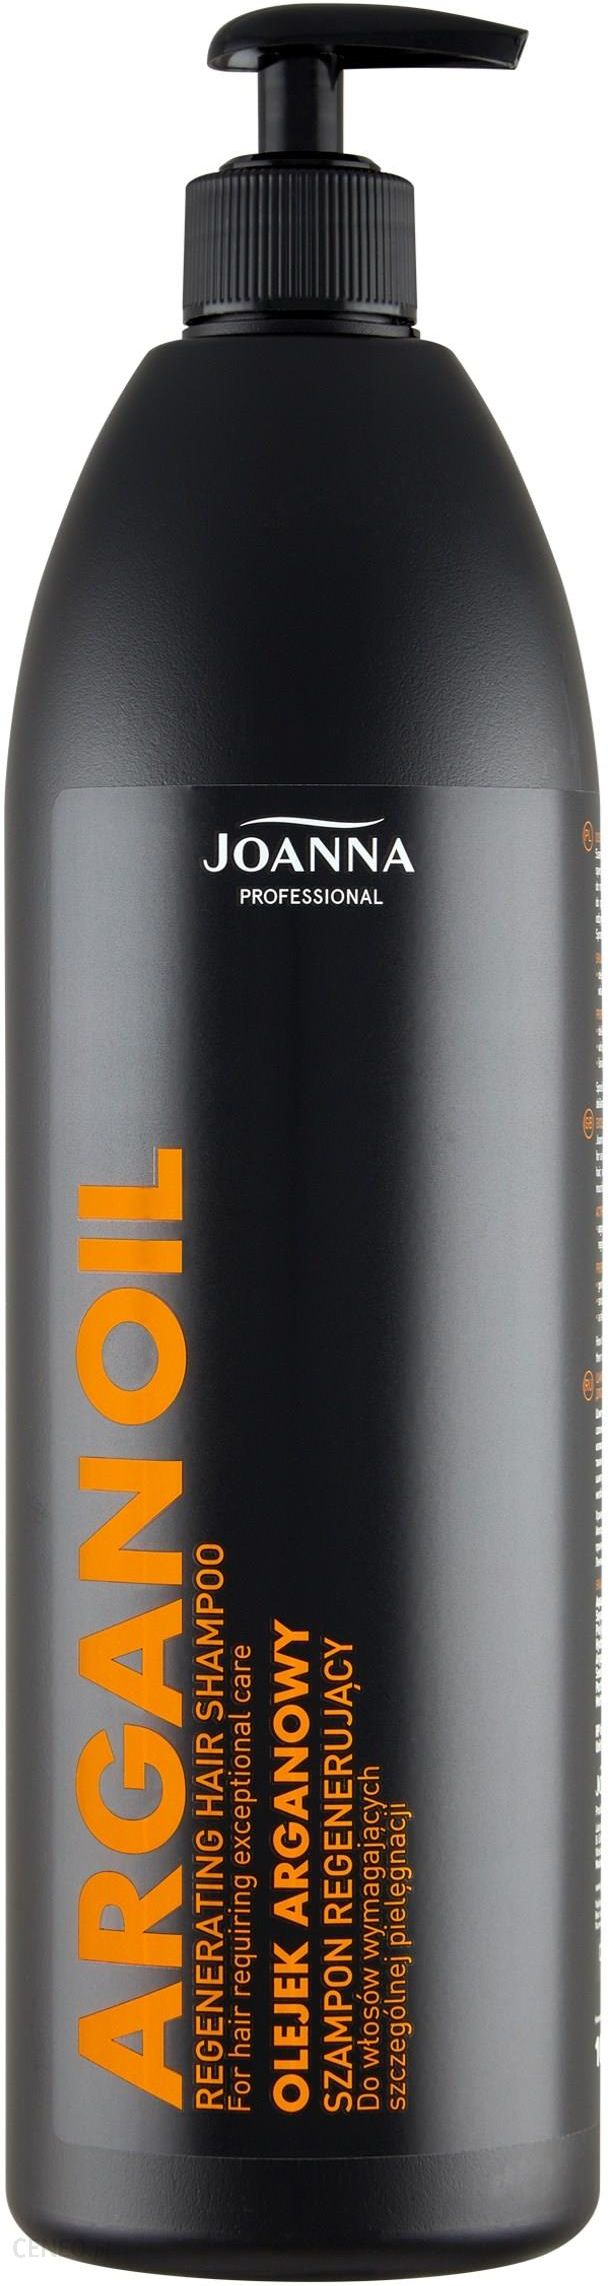 joanna professional szampon do włosów opionie